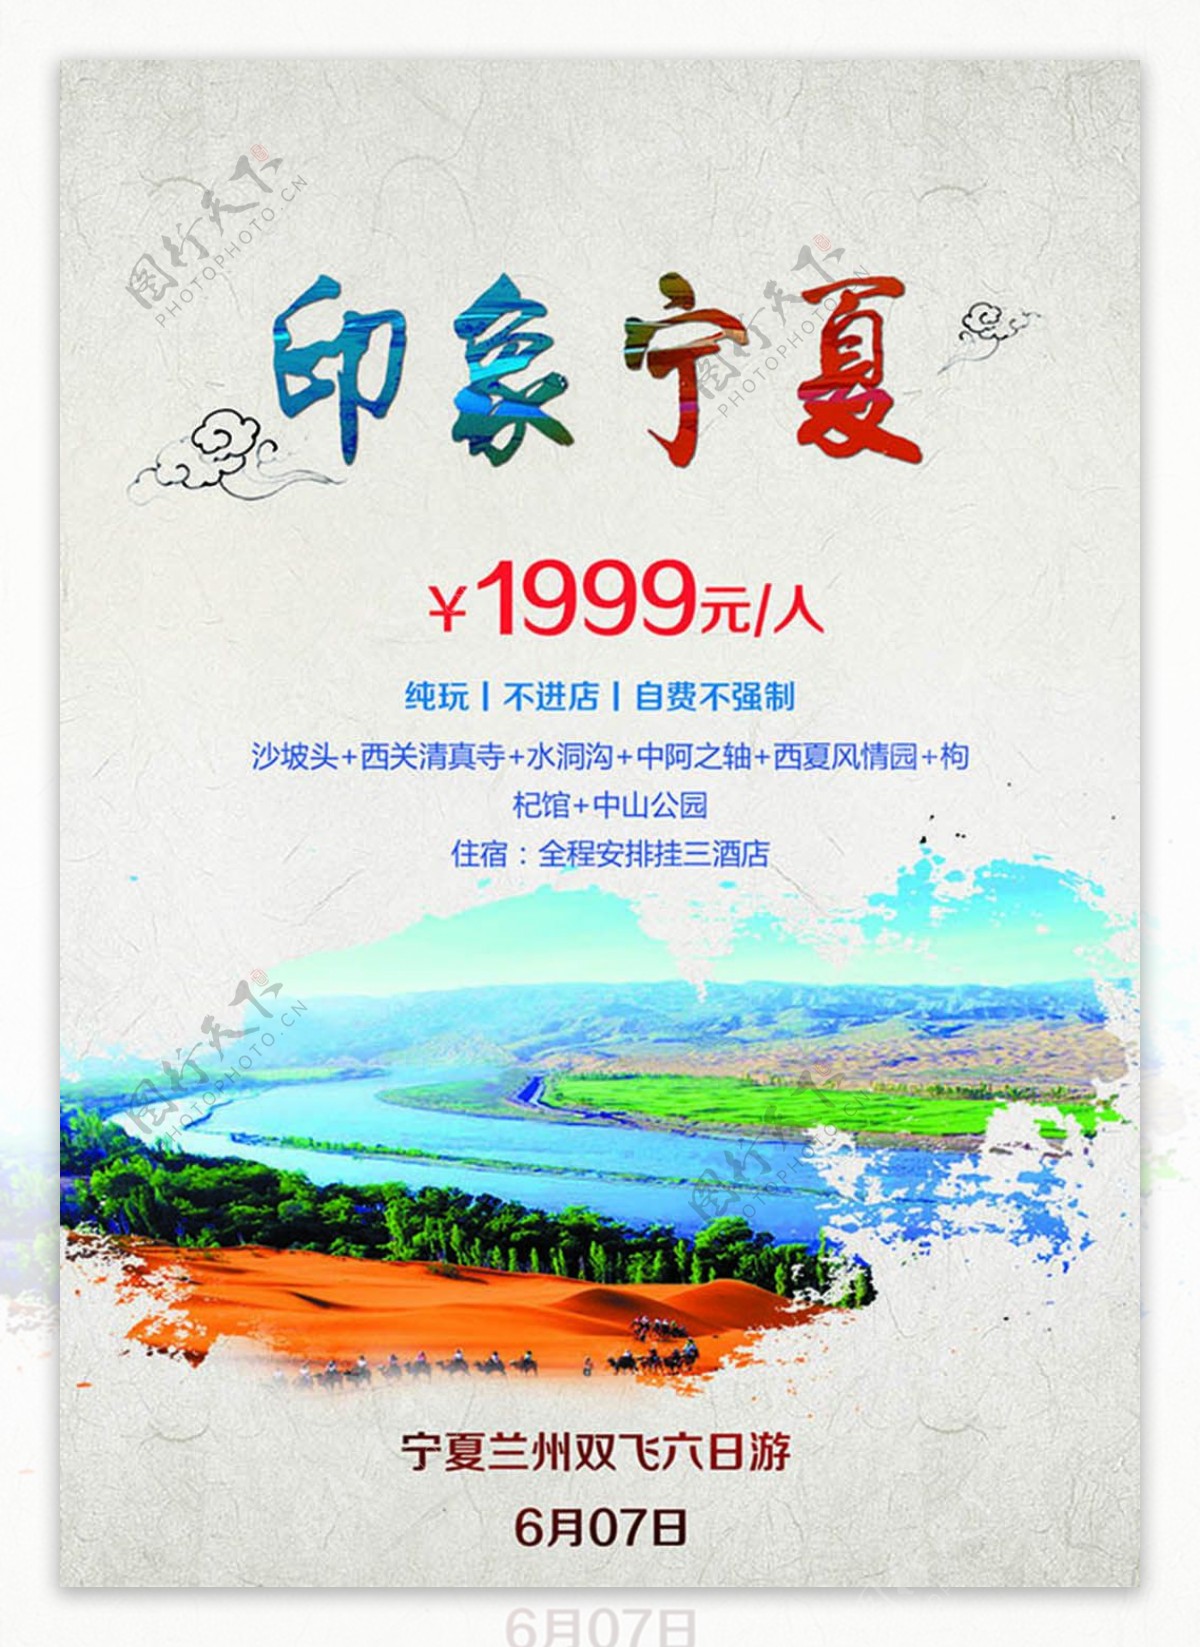 印象宁夏纯玩旅游宣传海报设计